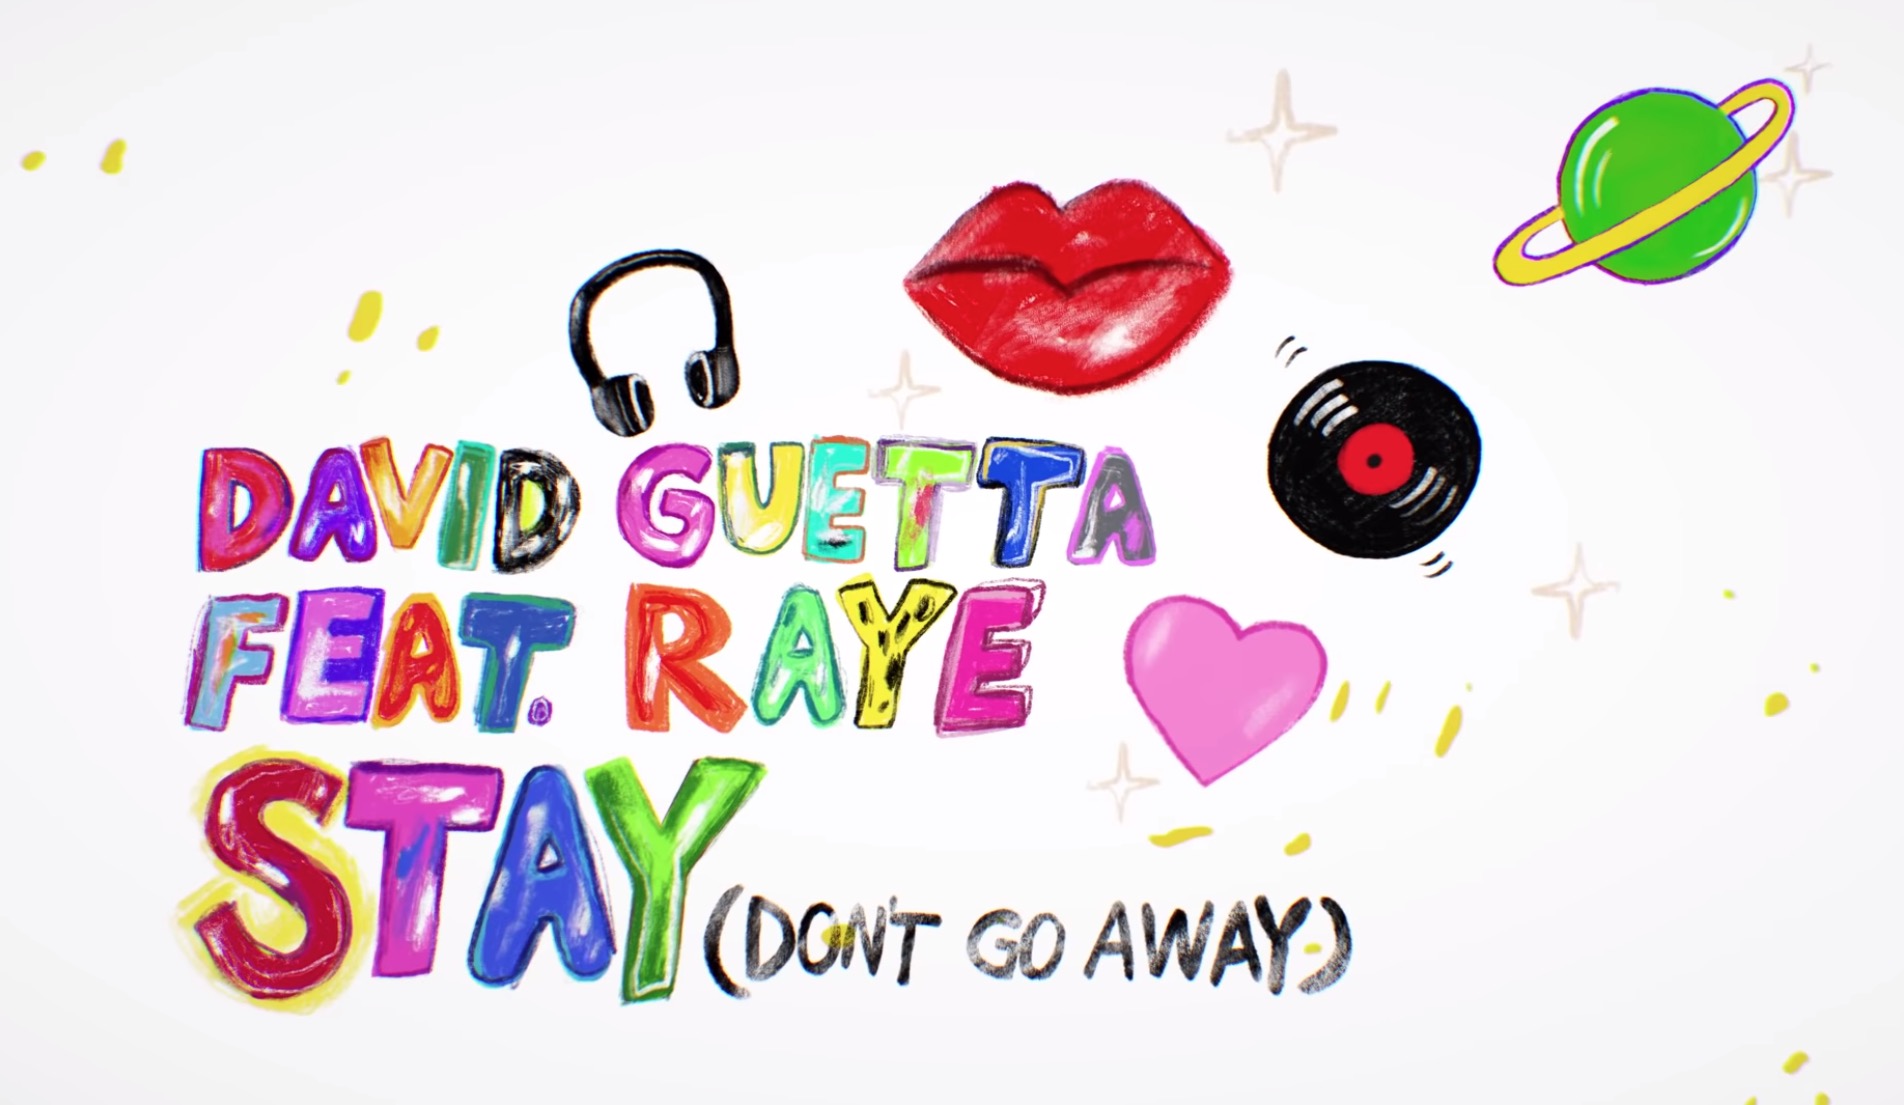 David Guetta feat. Raye - stay (don't go away). David Guetta ft Raye - stay (Orbz Remix). David Guetta featuring Raye - stay (don't go away) (Nicky Romero Remix). Stay (don't go away) Nico de Andrea Remix; feat. Raye David Guetta, Nico de Andrea, Raye. Don stay away